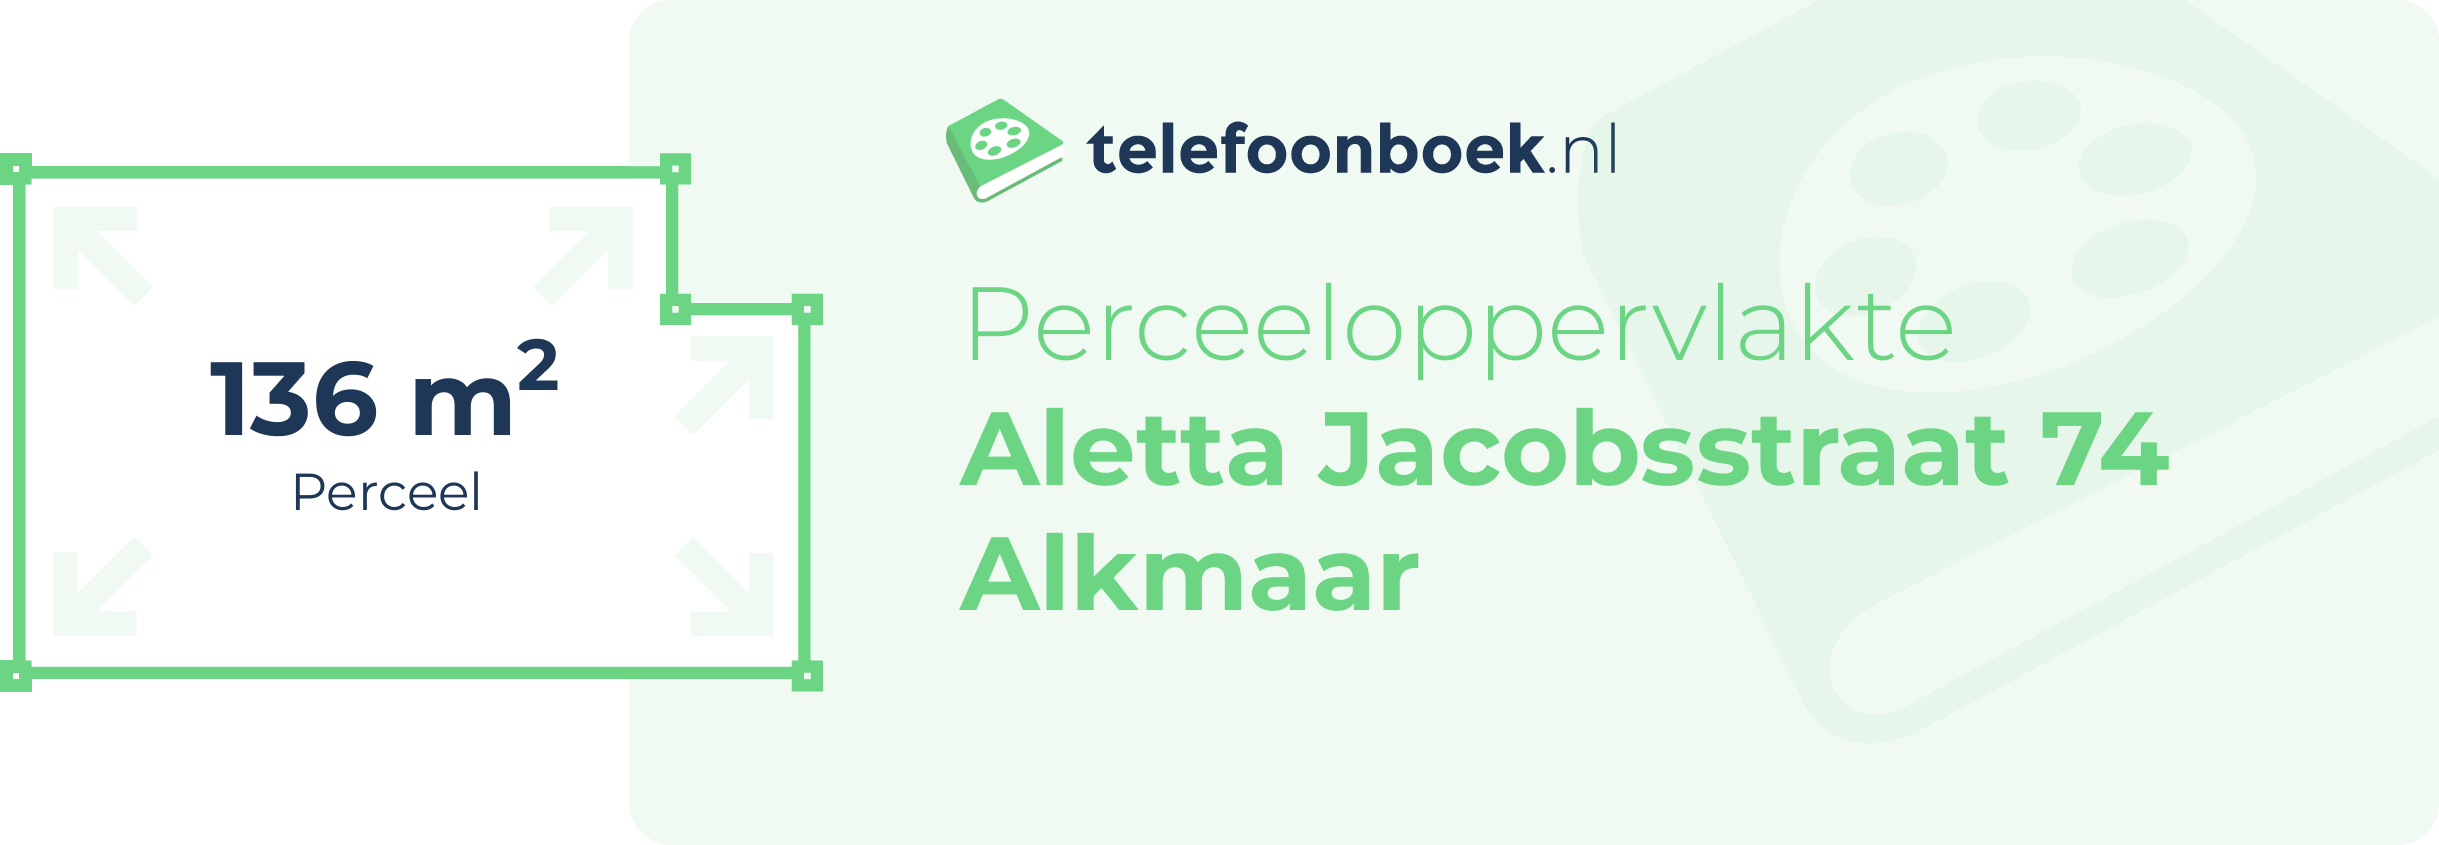 Perceeloppervlakte Aletta Jacobsstraat 74 Alkmaar